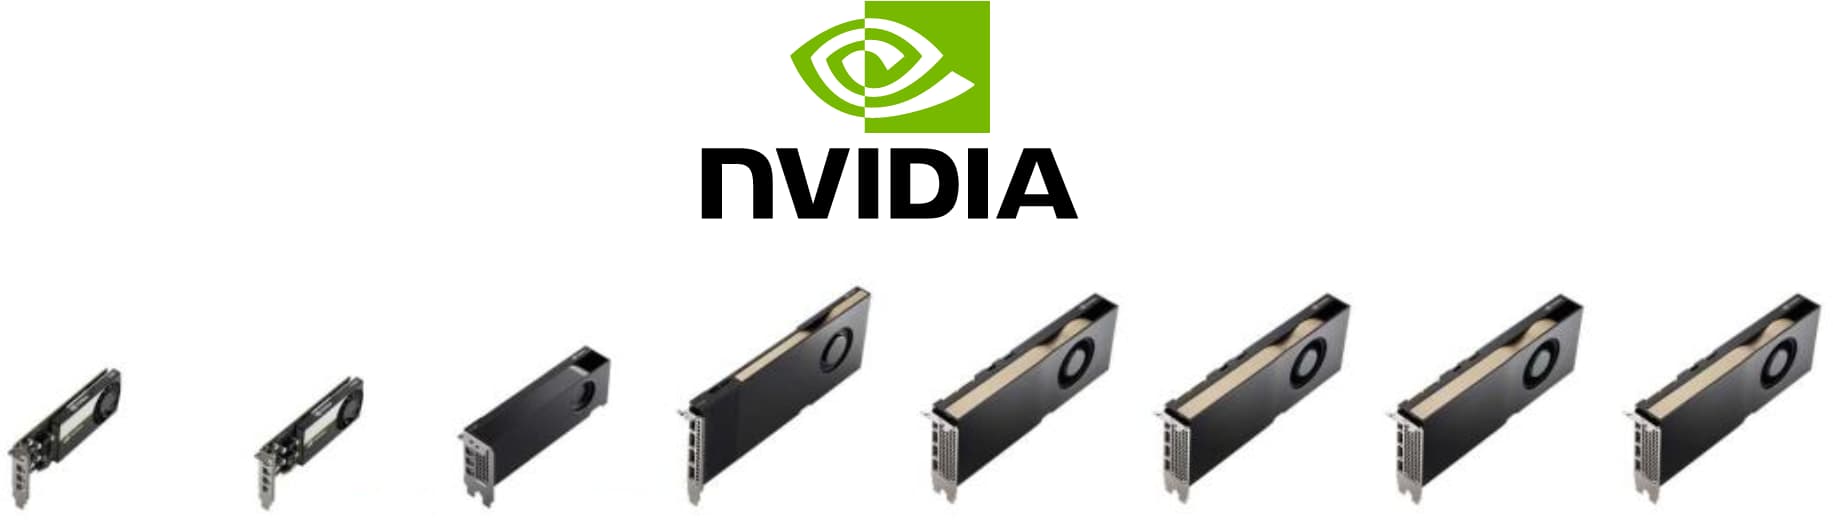 Cartes graphique GPU NVIDIA pro compatibles